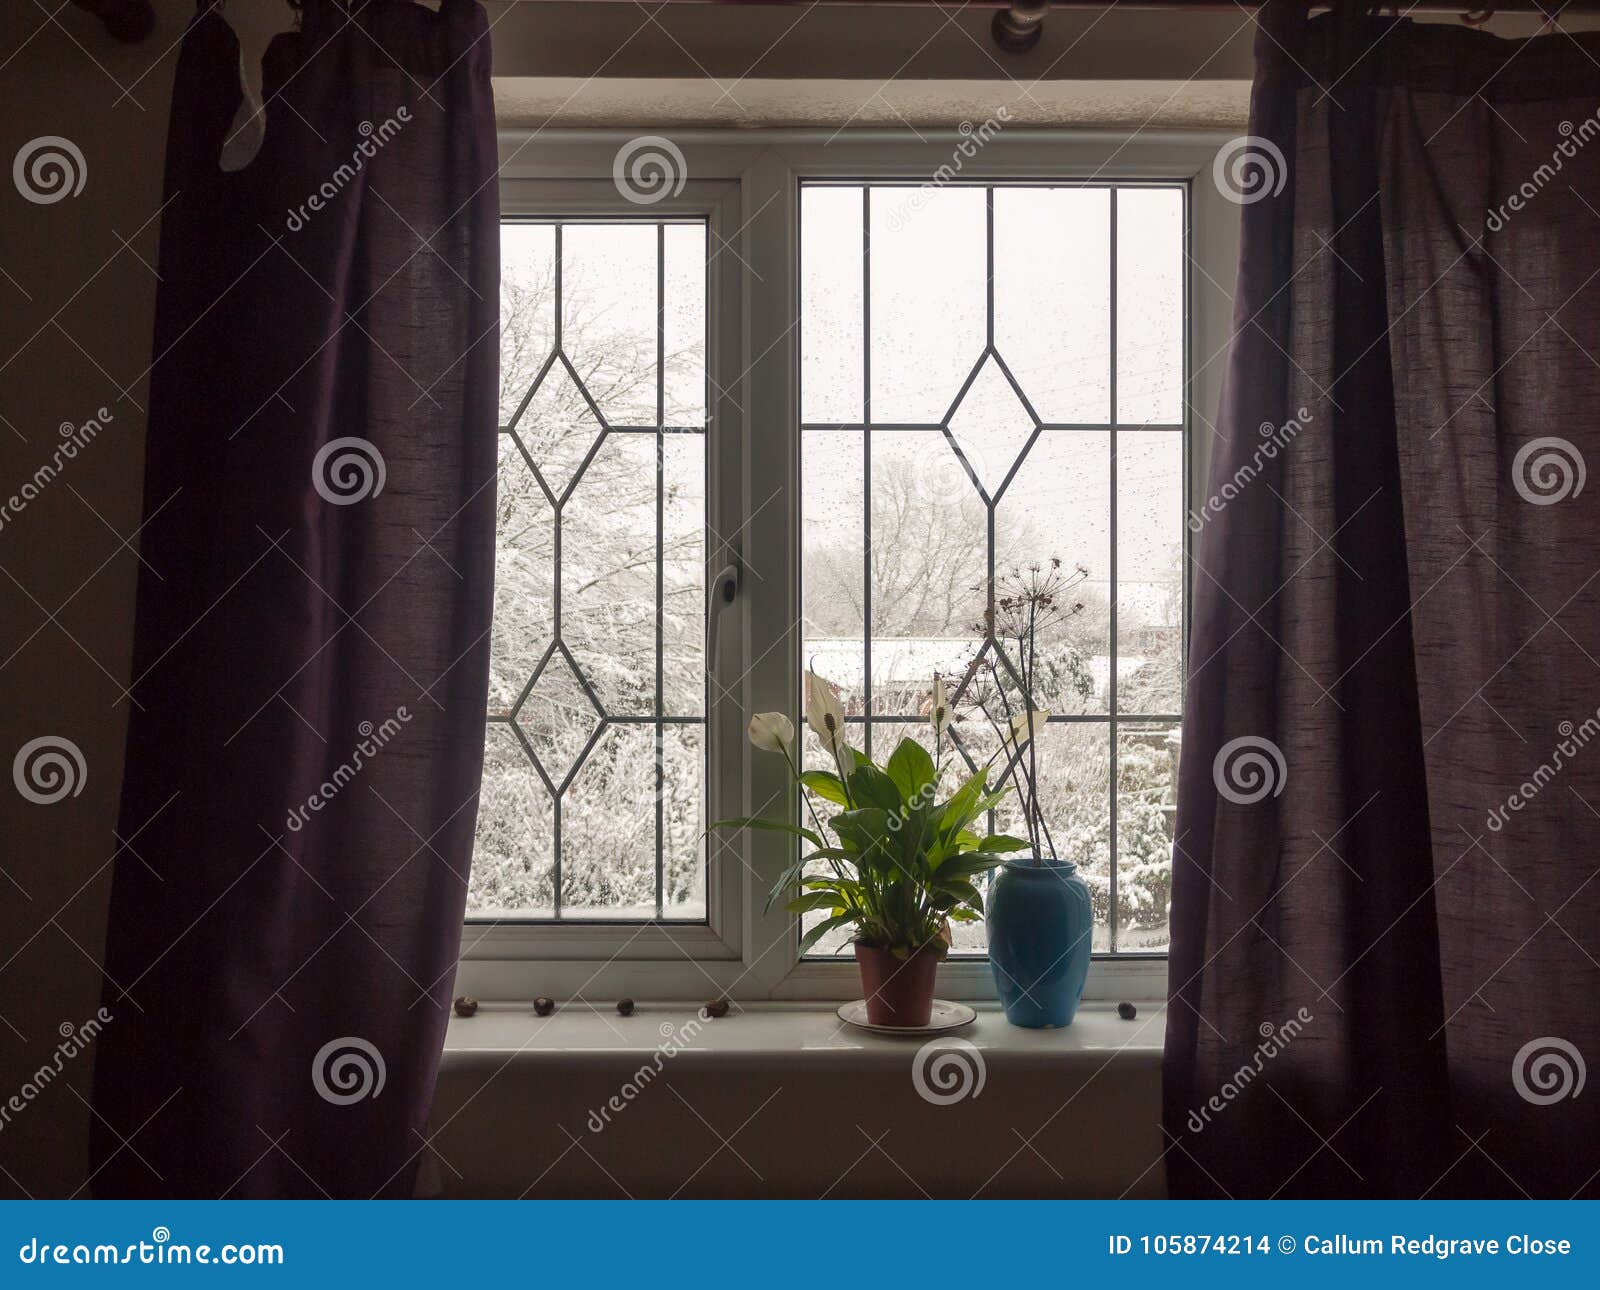 Inside Curtains Window House Room Windowsill Plant Blue Vase